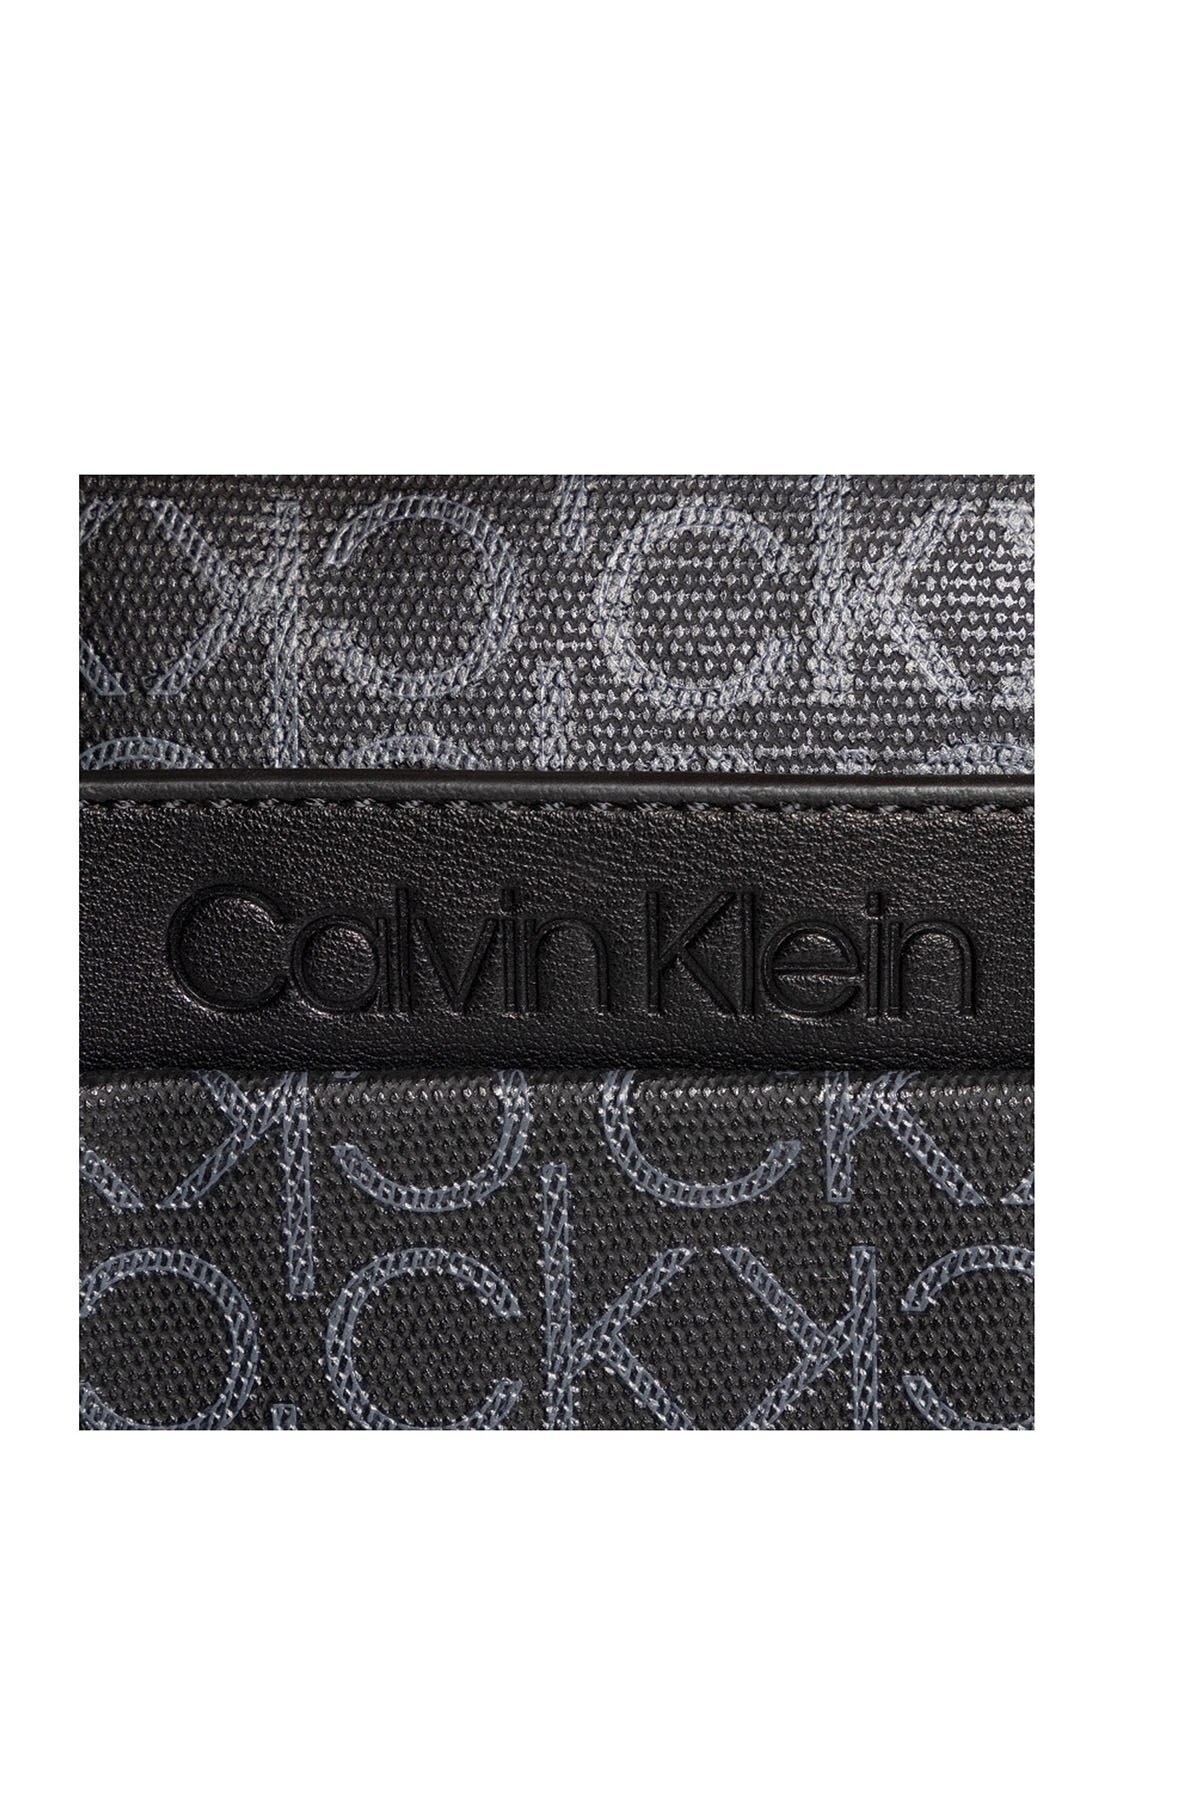 Calvin Klein Logo Baskılı Ayarlanabilir Askılı Erkek Çanta K50K505926 0GN SİYAH